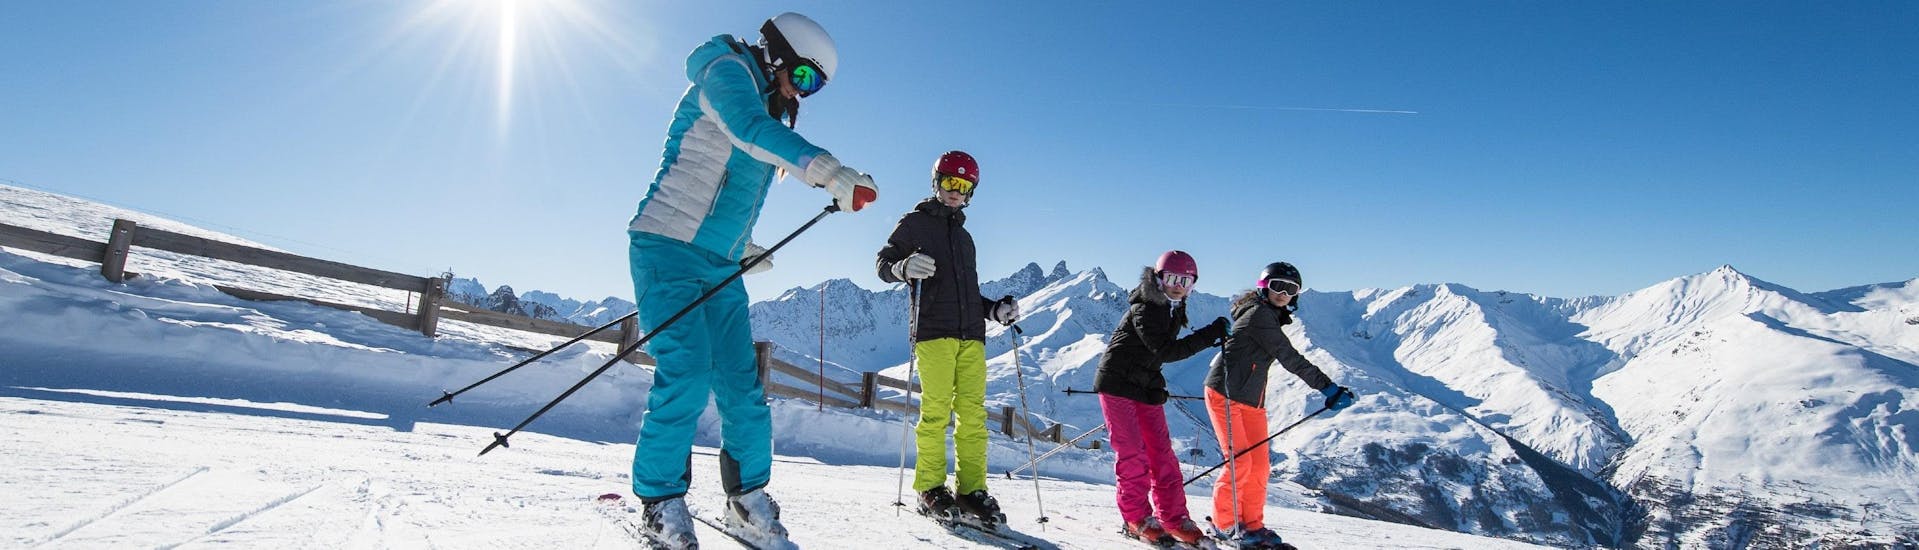 Un monitor de esquí de ESI Alpe d'Huez - European Ski School, muestra a los participantes los gestos correctos durante sus clases particulares de esquí para niños de todos los niveles.